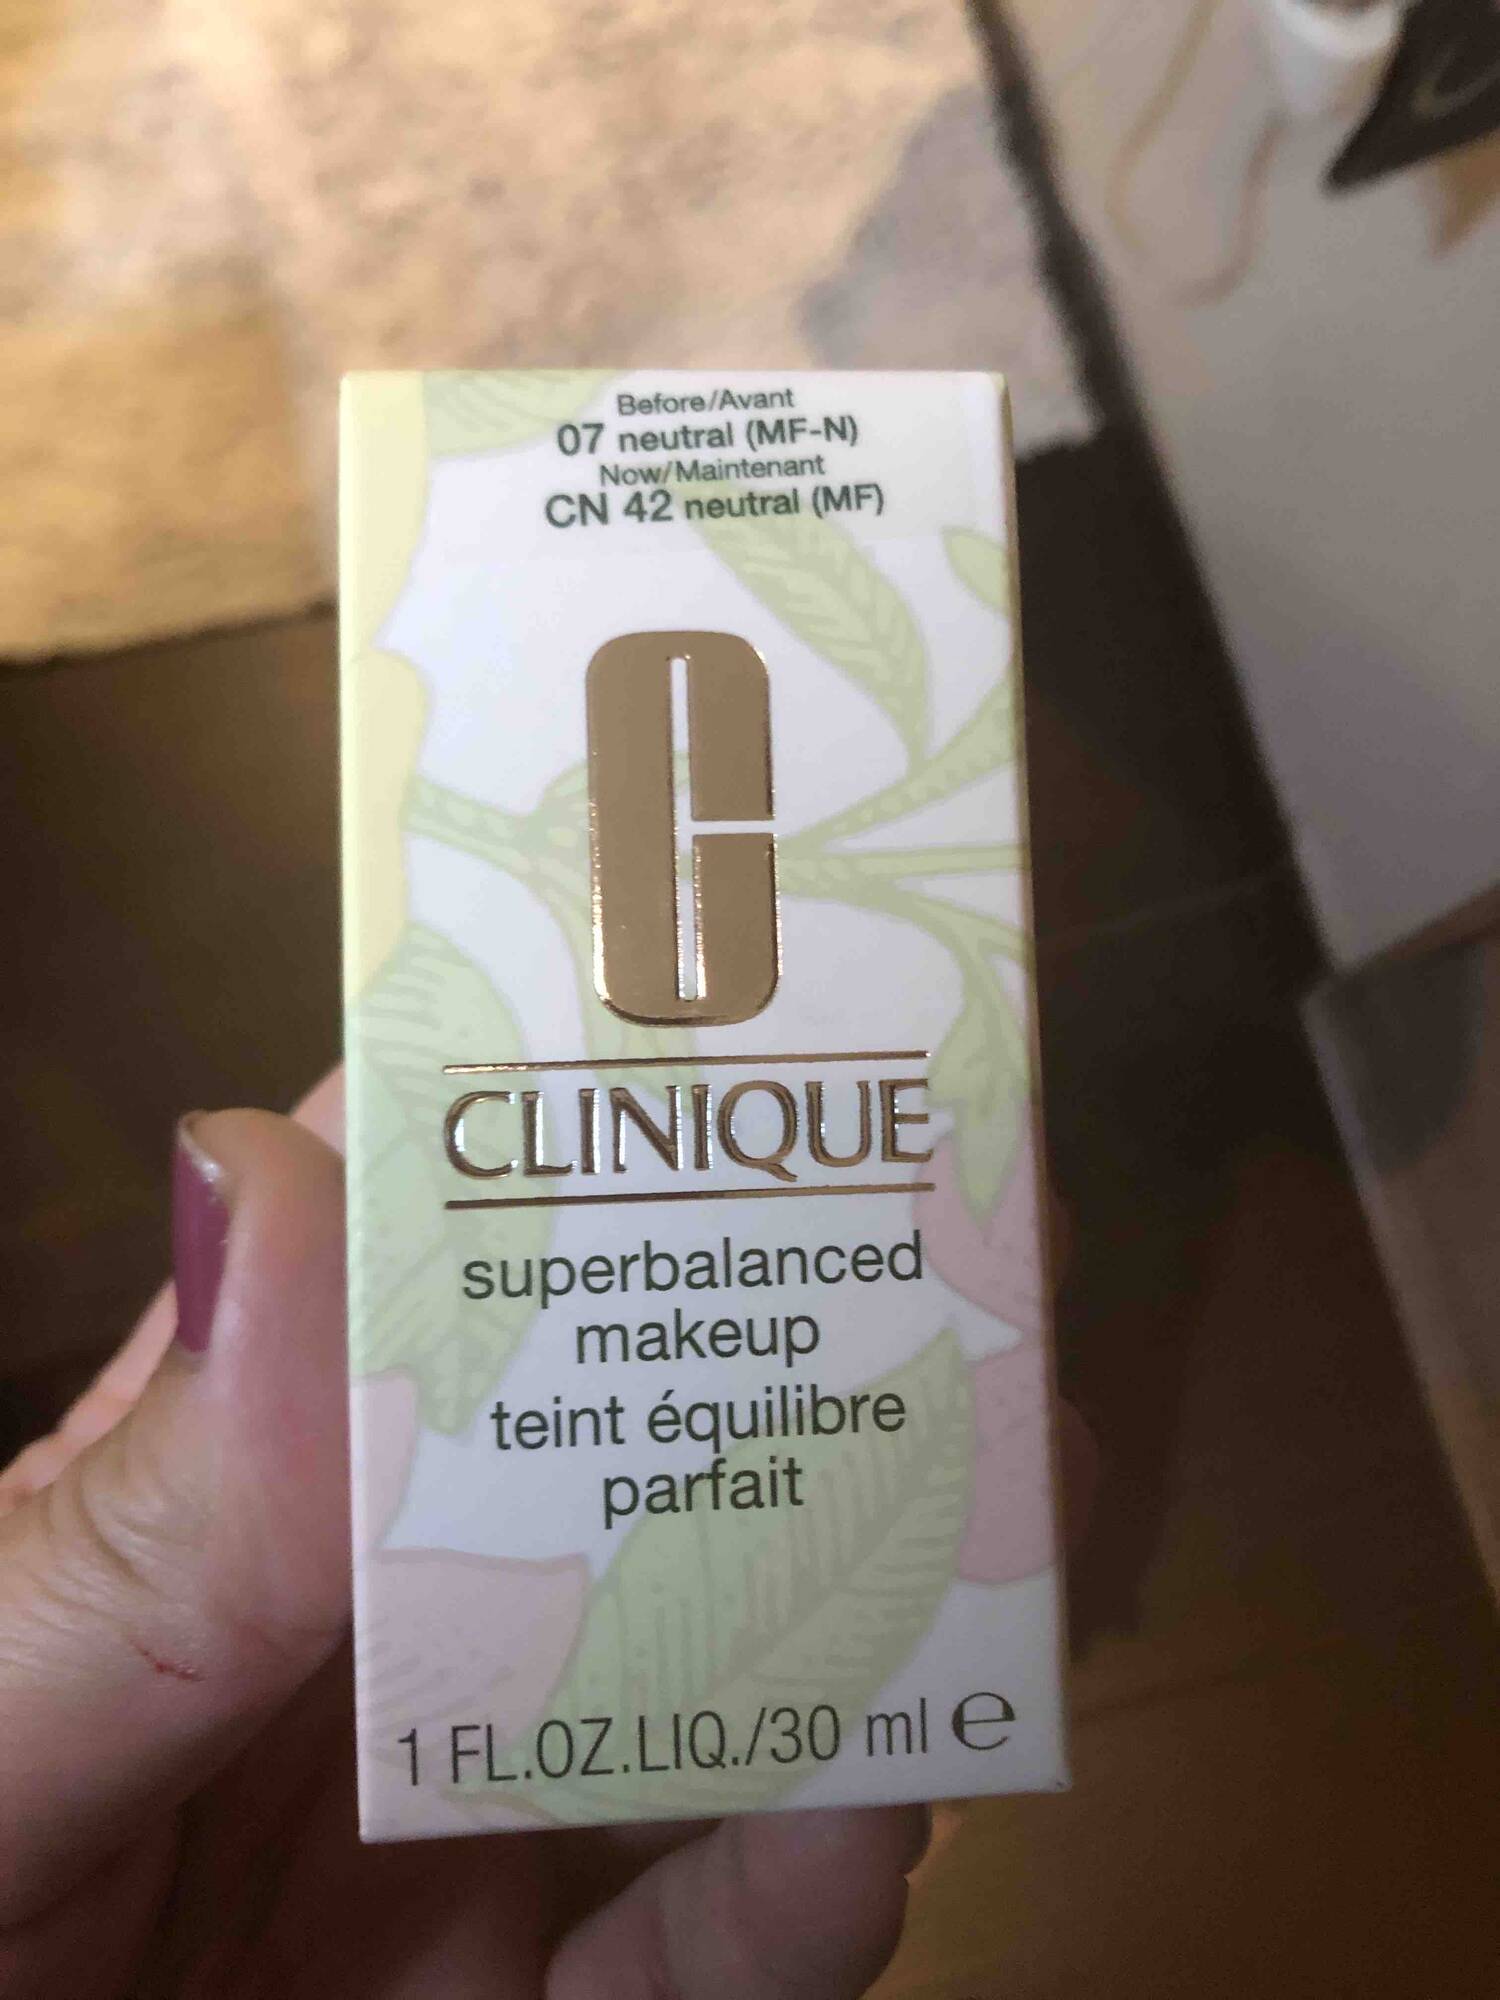 CLINIQUE - Superbalanced makeup teint équilibre parfait